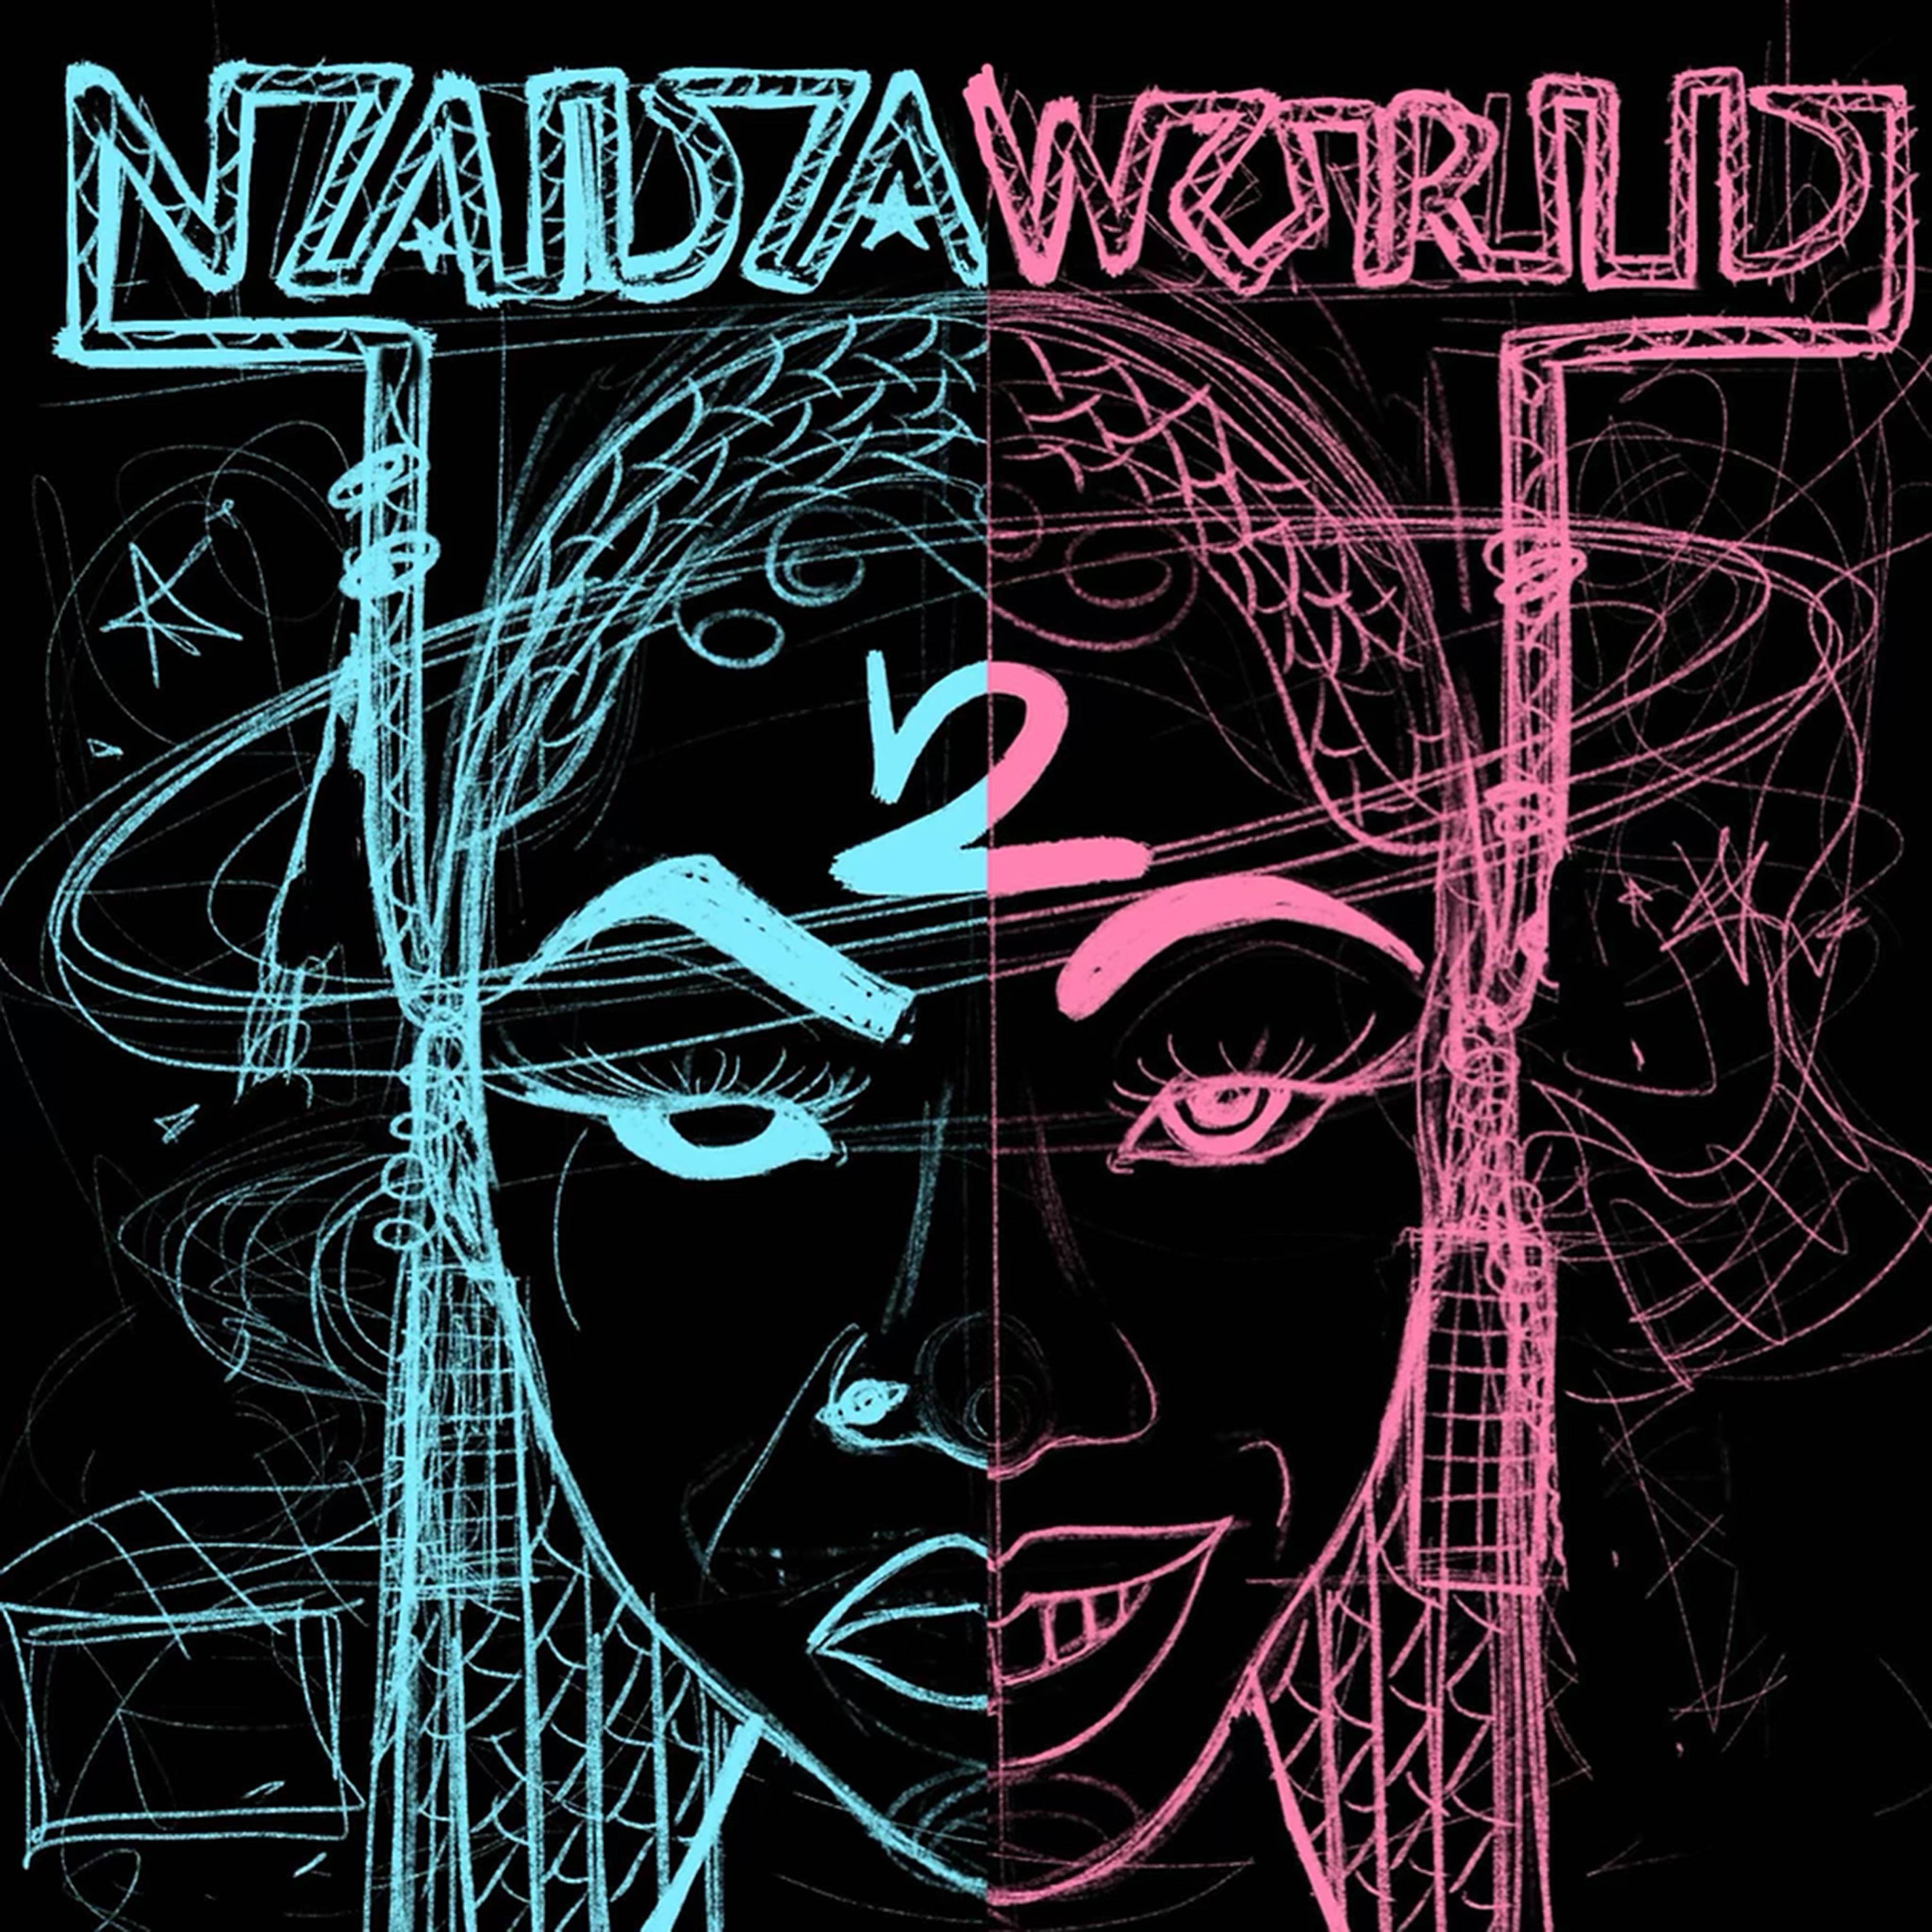 Deetranada's "NADAWORLD 2" album artwork